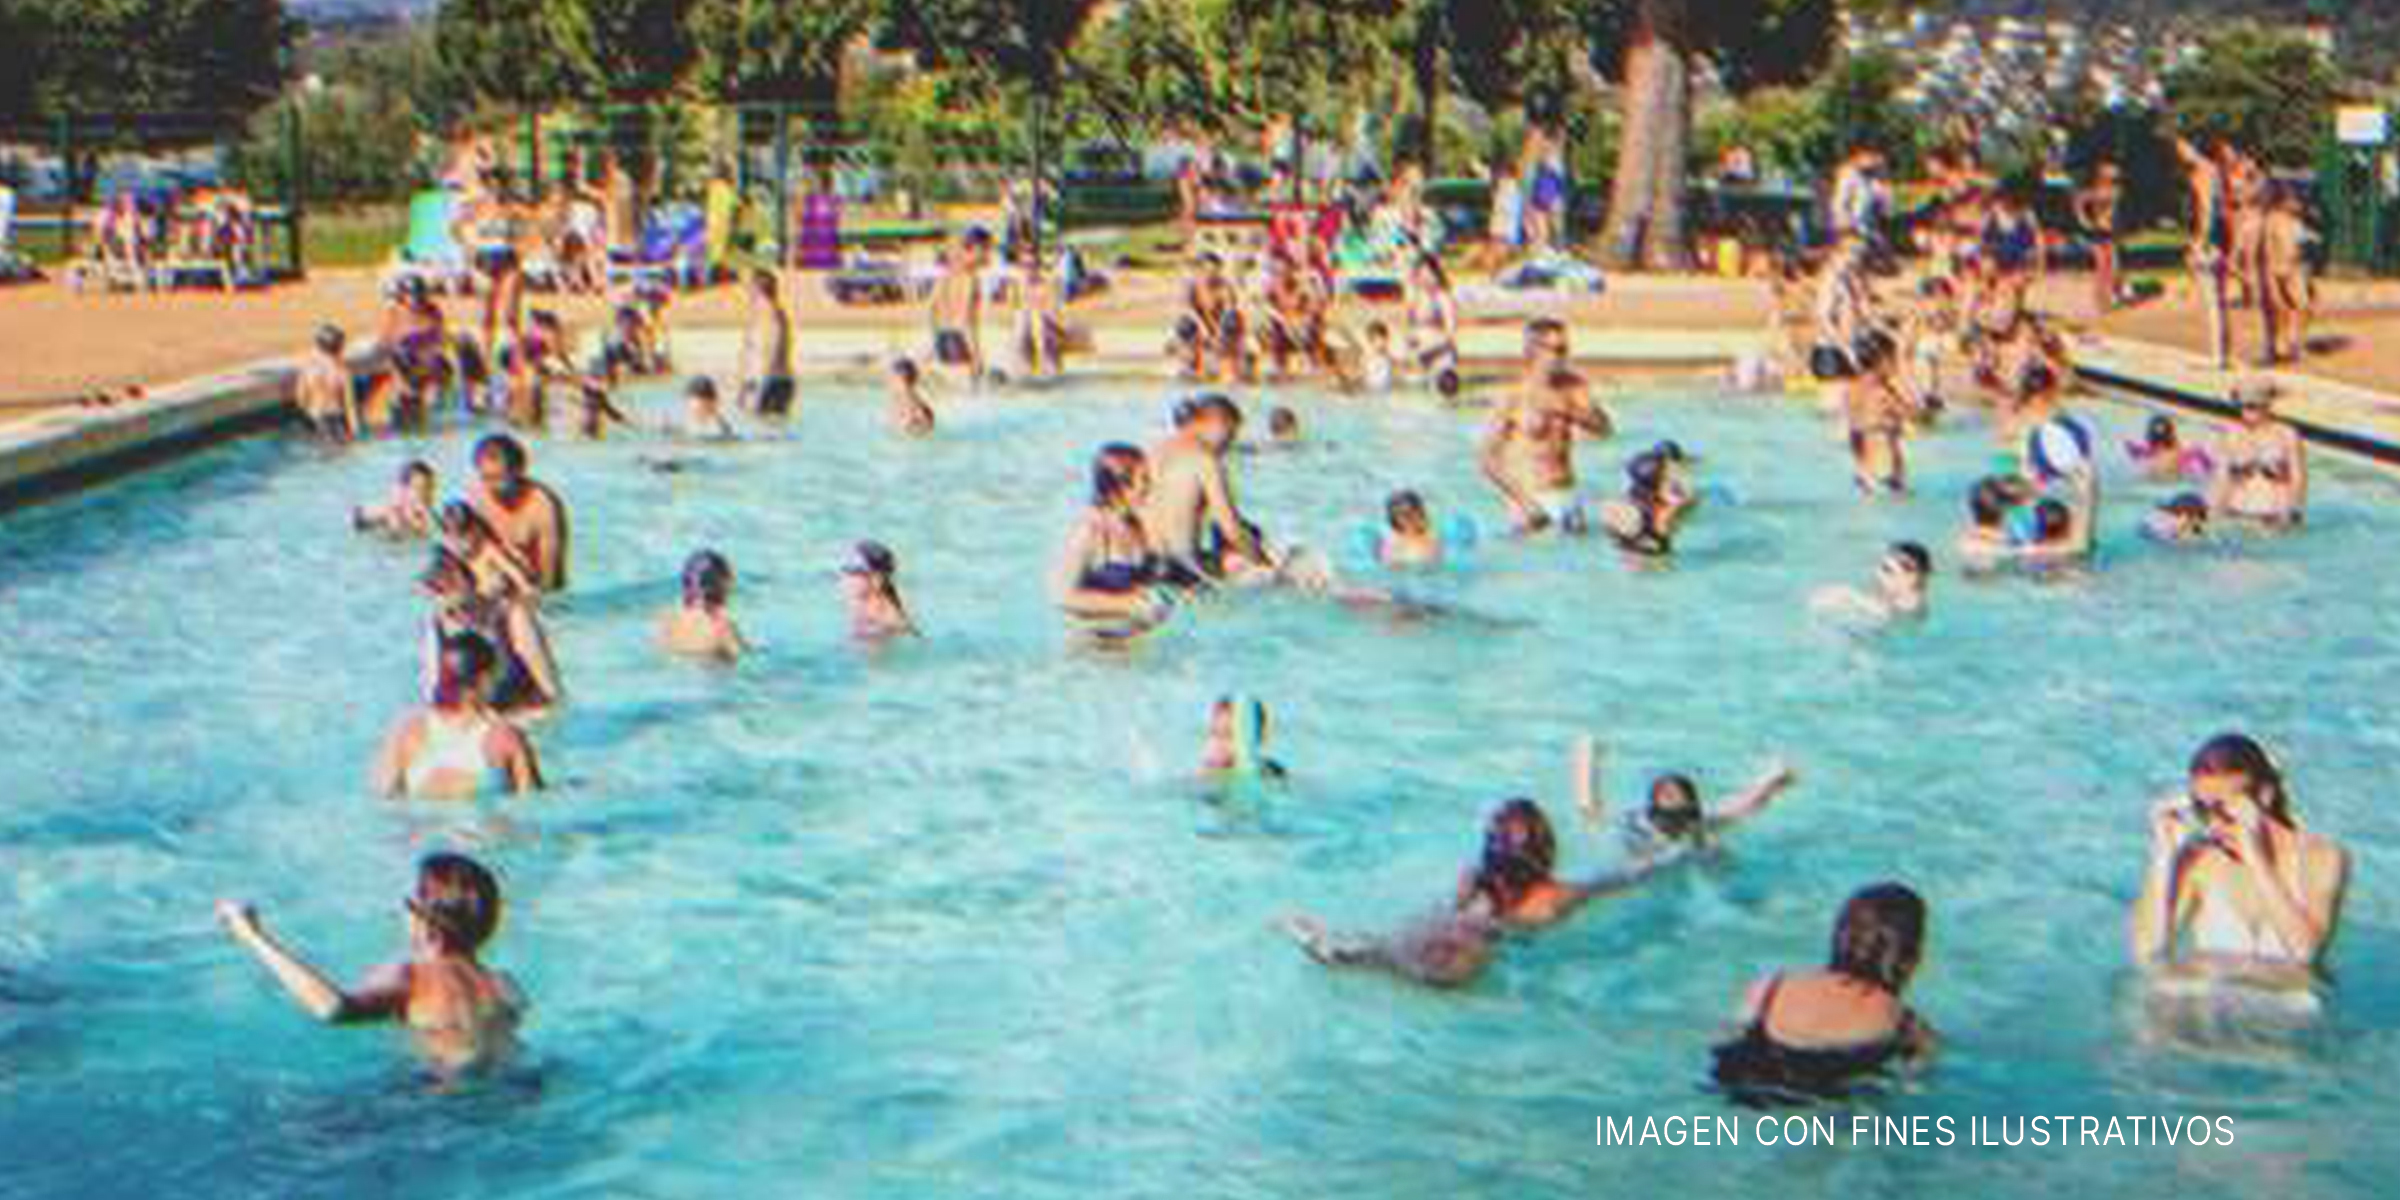 Personas en una piscina | Foto: Flickr / N i c o l a